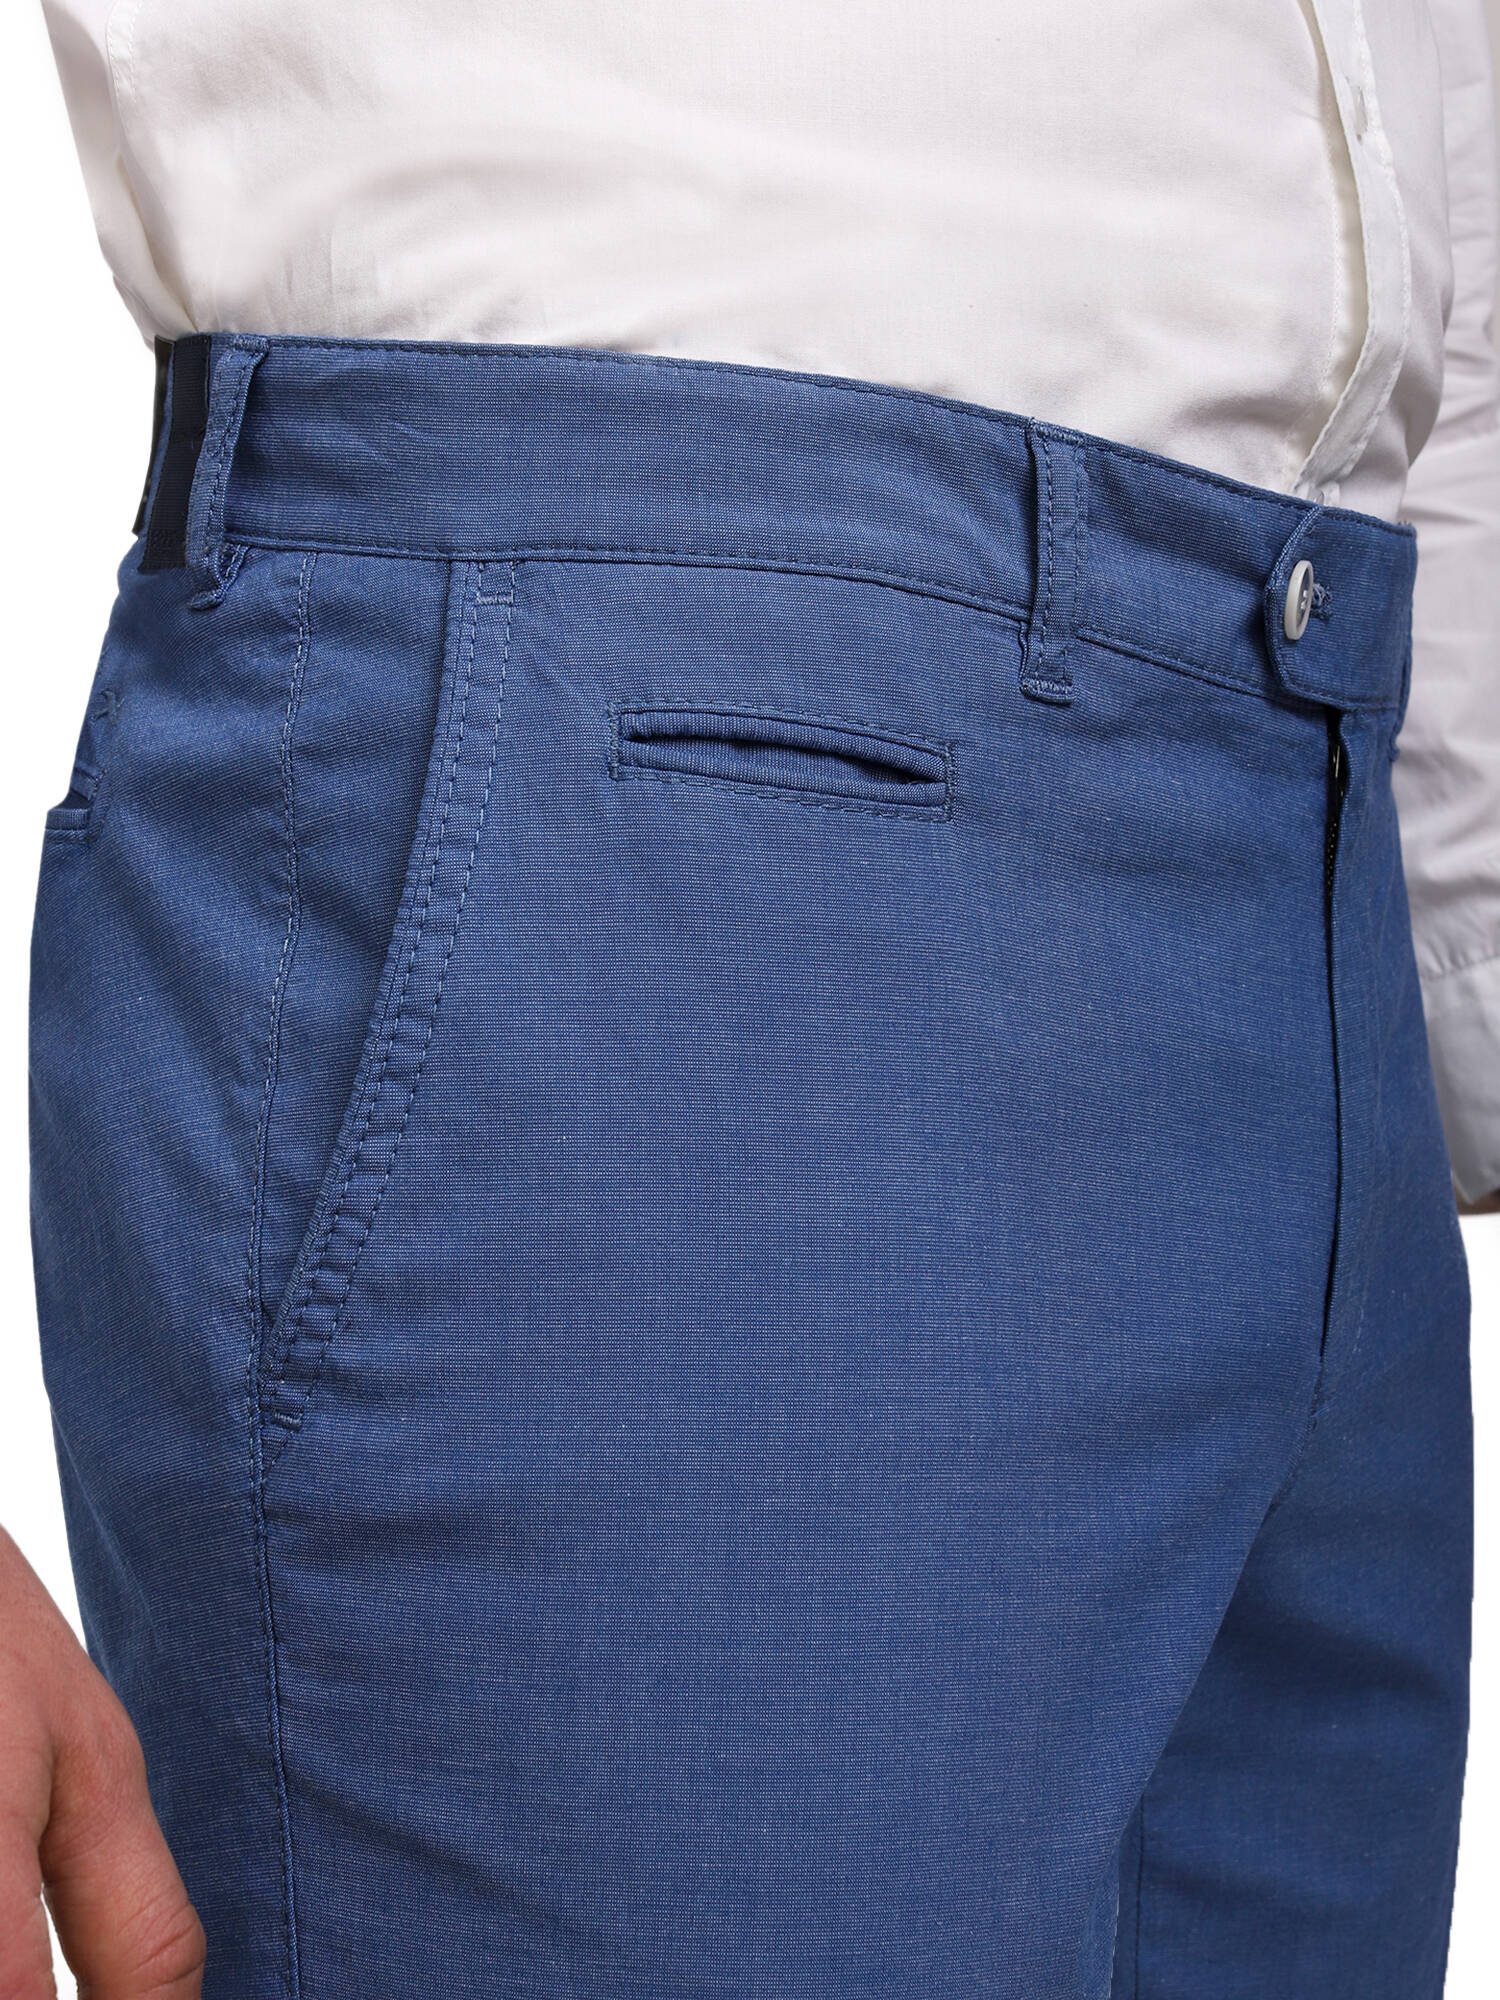 Мужские лёгкие хлопковые брюки Brax, мод.Everest | купить в интернет-магазине Olymp-Men